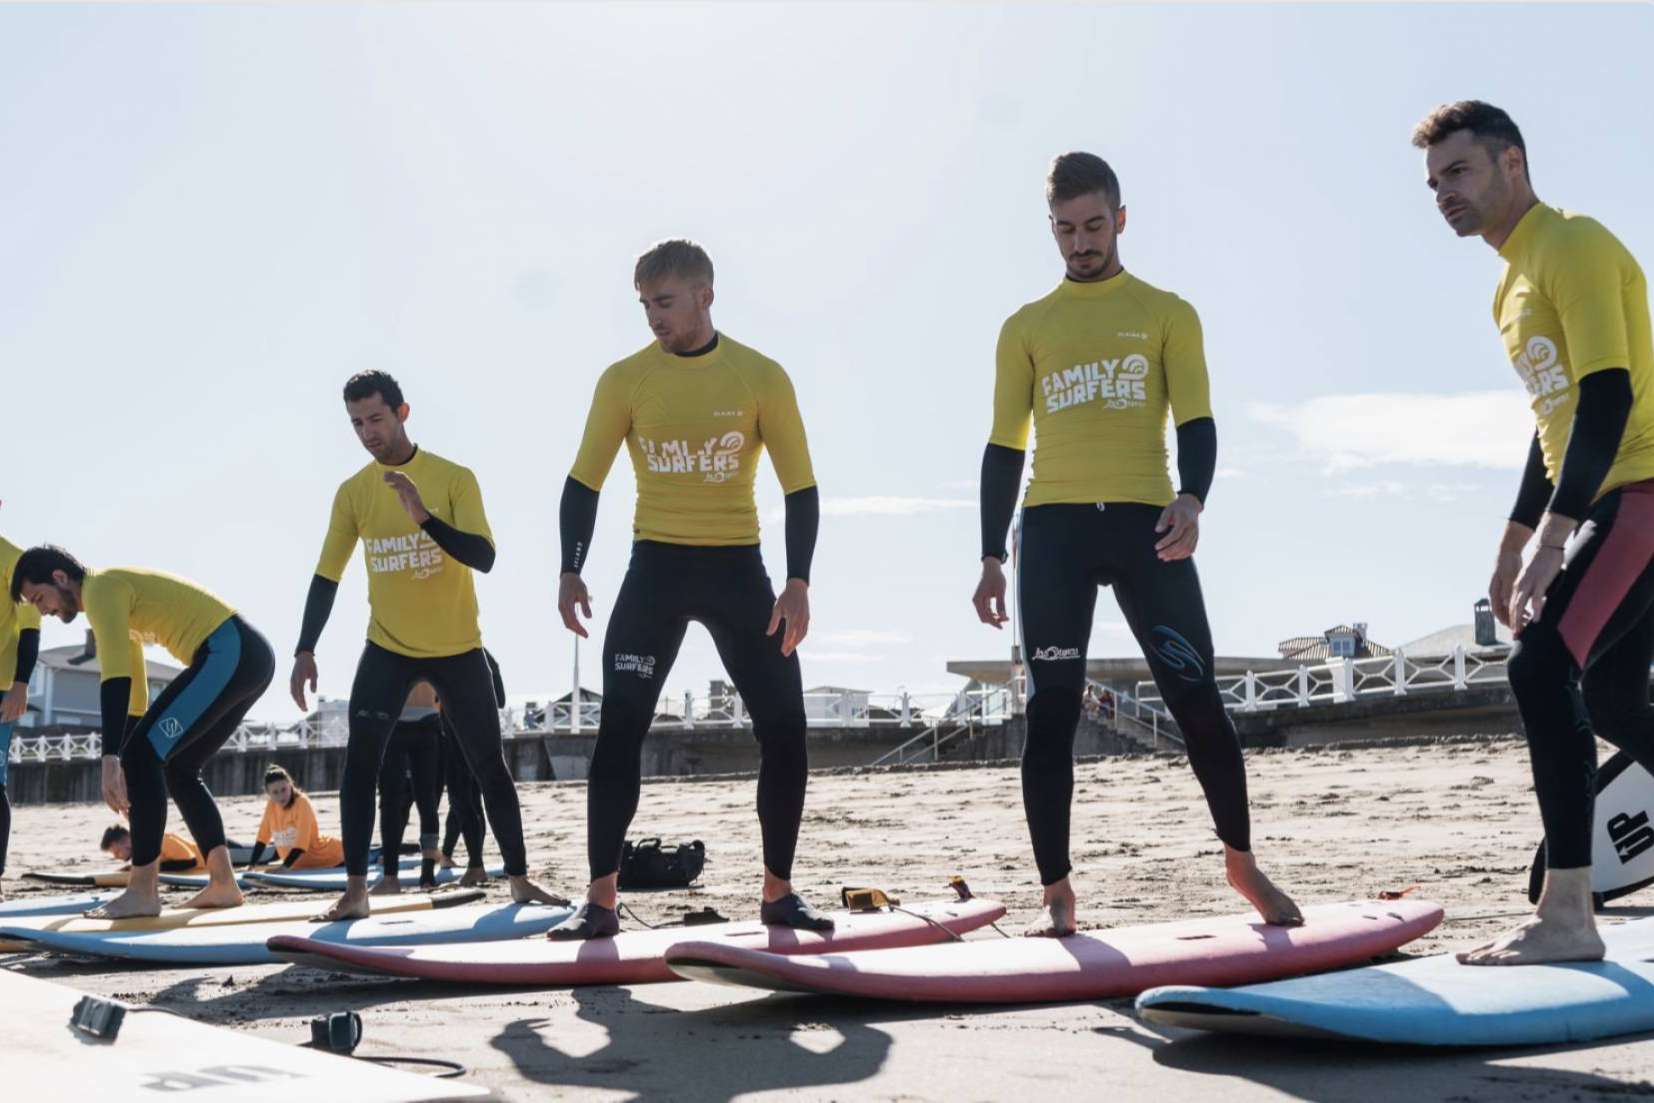 Los vuelos a Salinas permiten a los amantes del surf disfrutar de todo lo que ofrece Family Surfers – Surfcamp Las Dunas